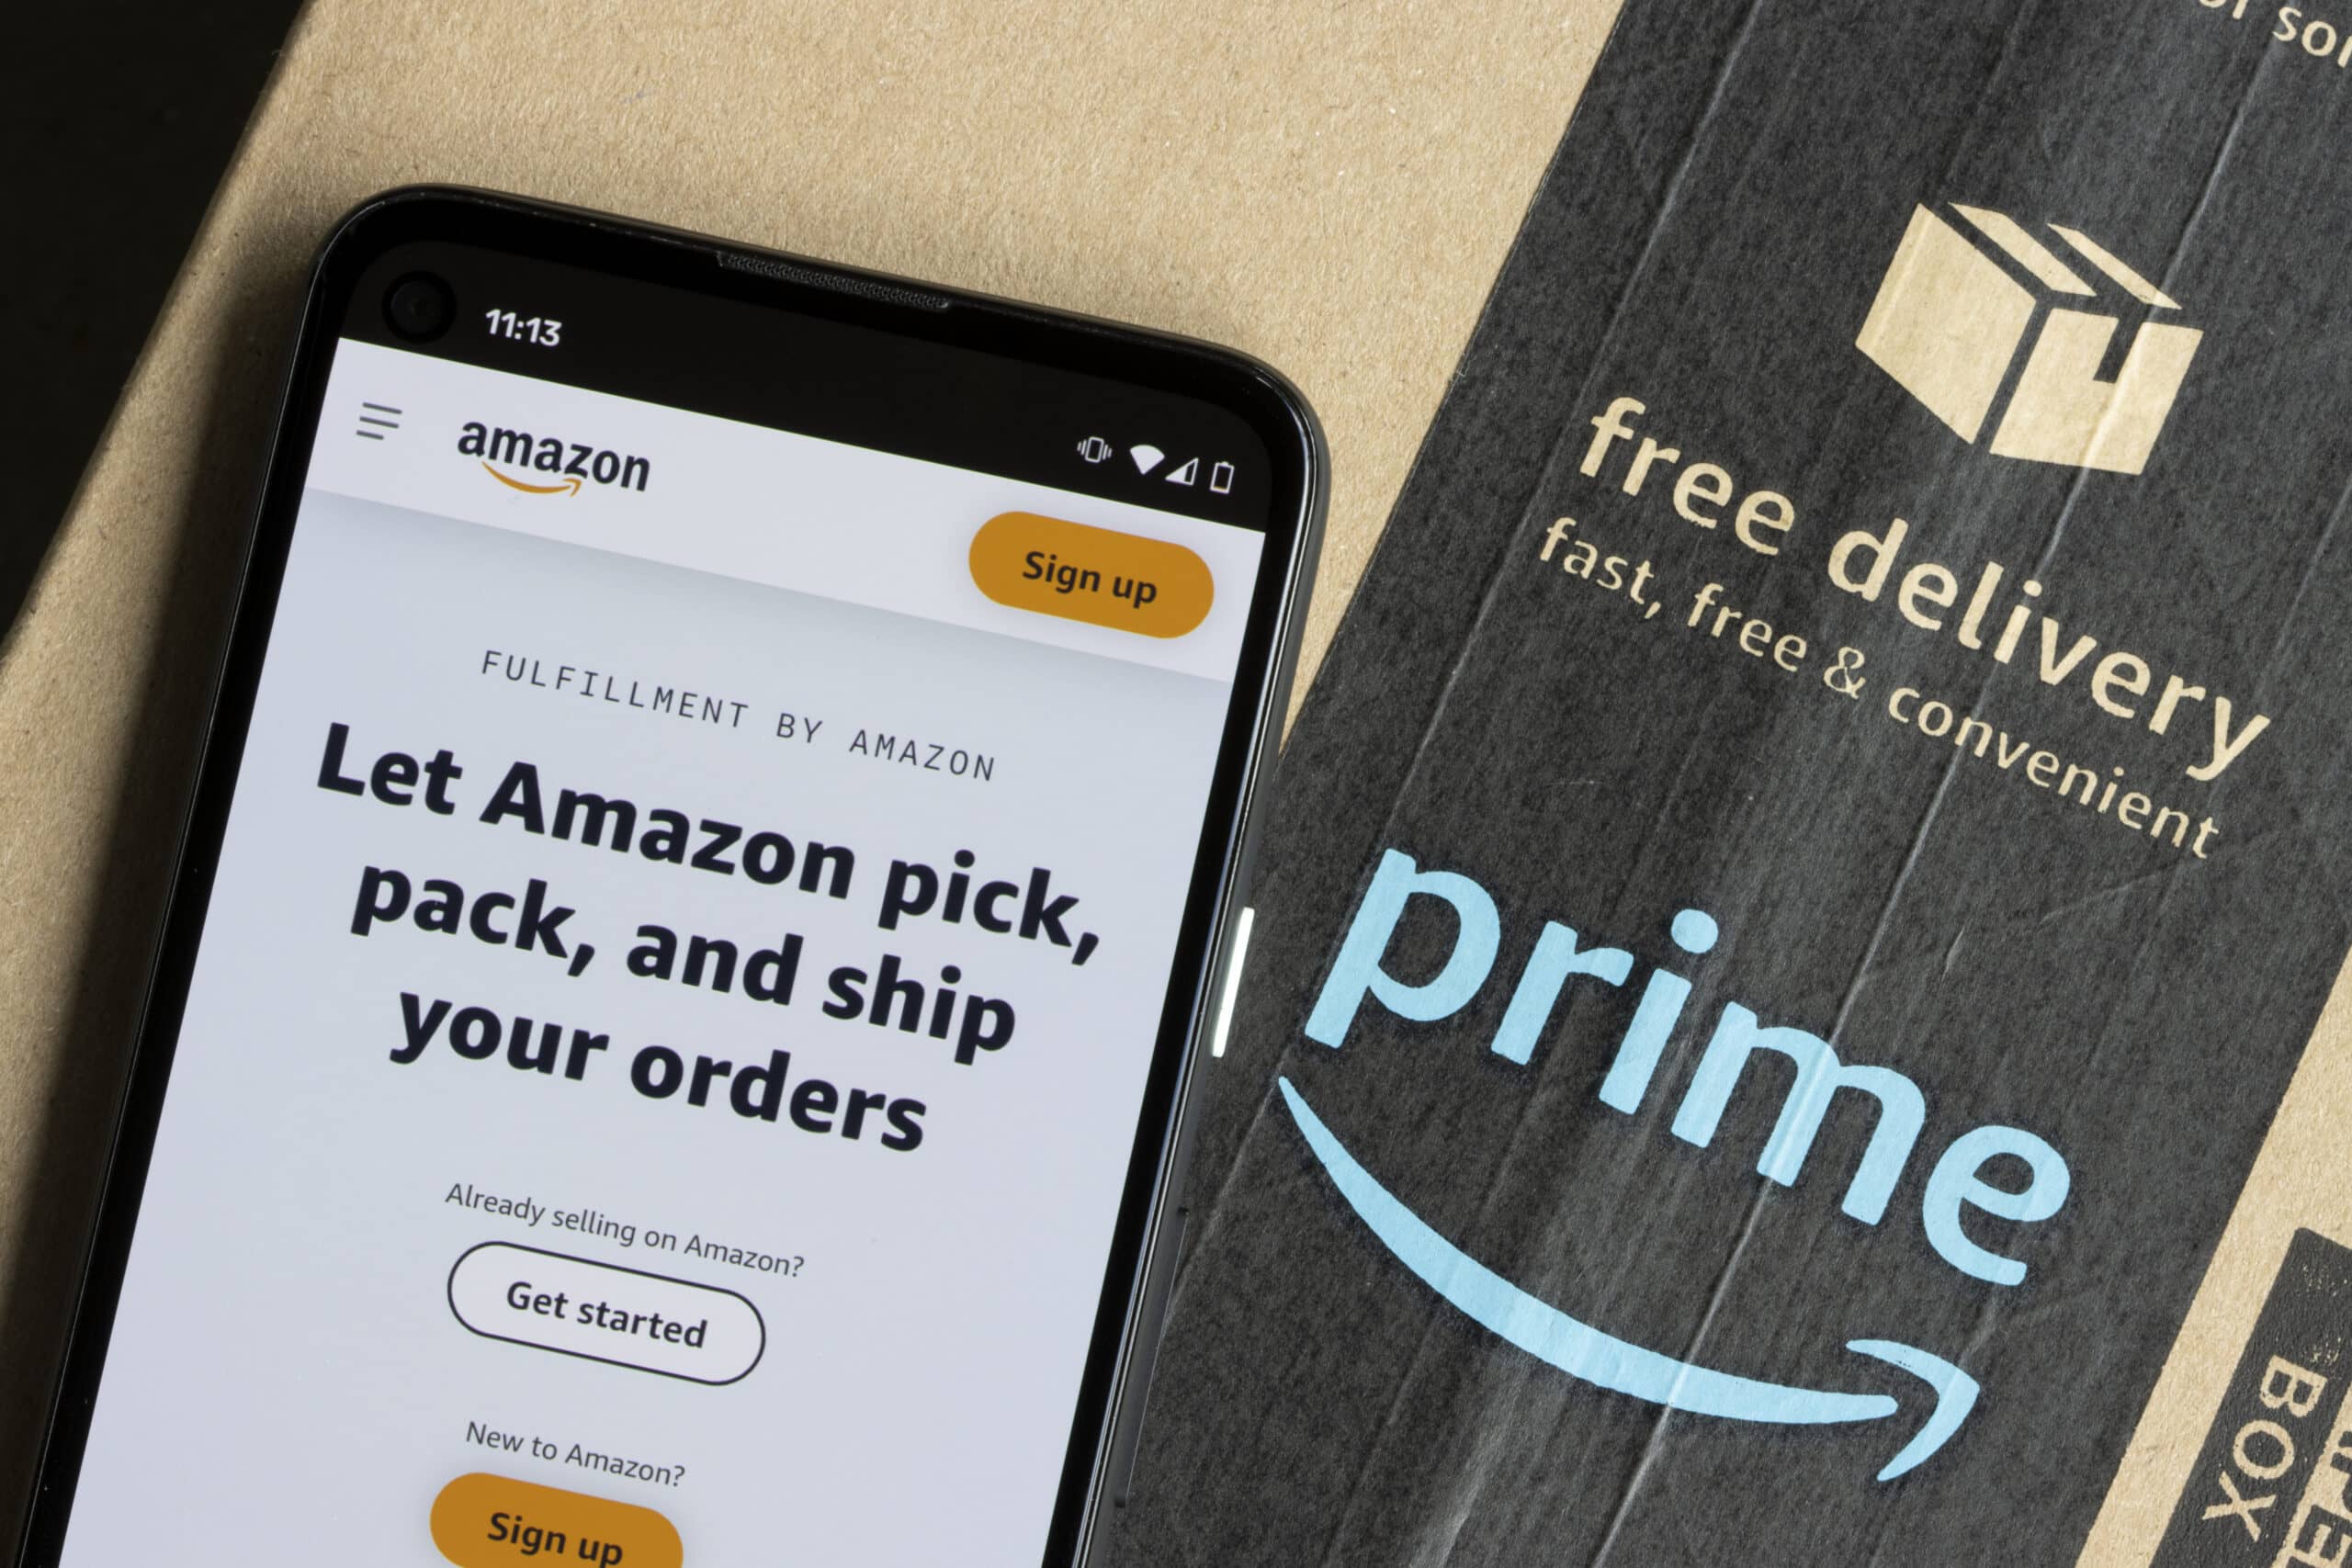 Du fragst dich, wie Dropshipping auf Amazon funktioniert? Erhalte Tipps für dein Business in unserem Guide!